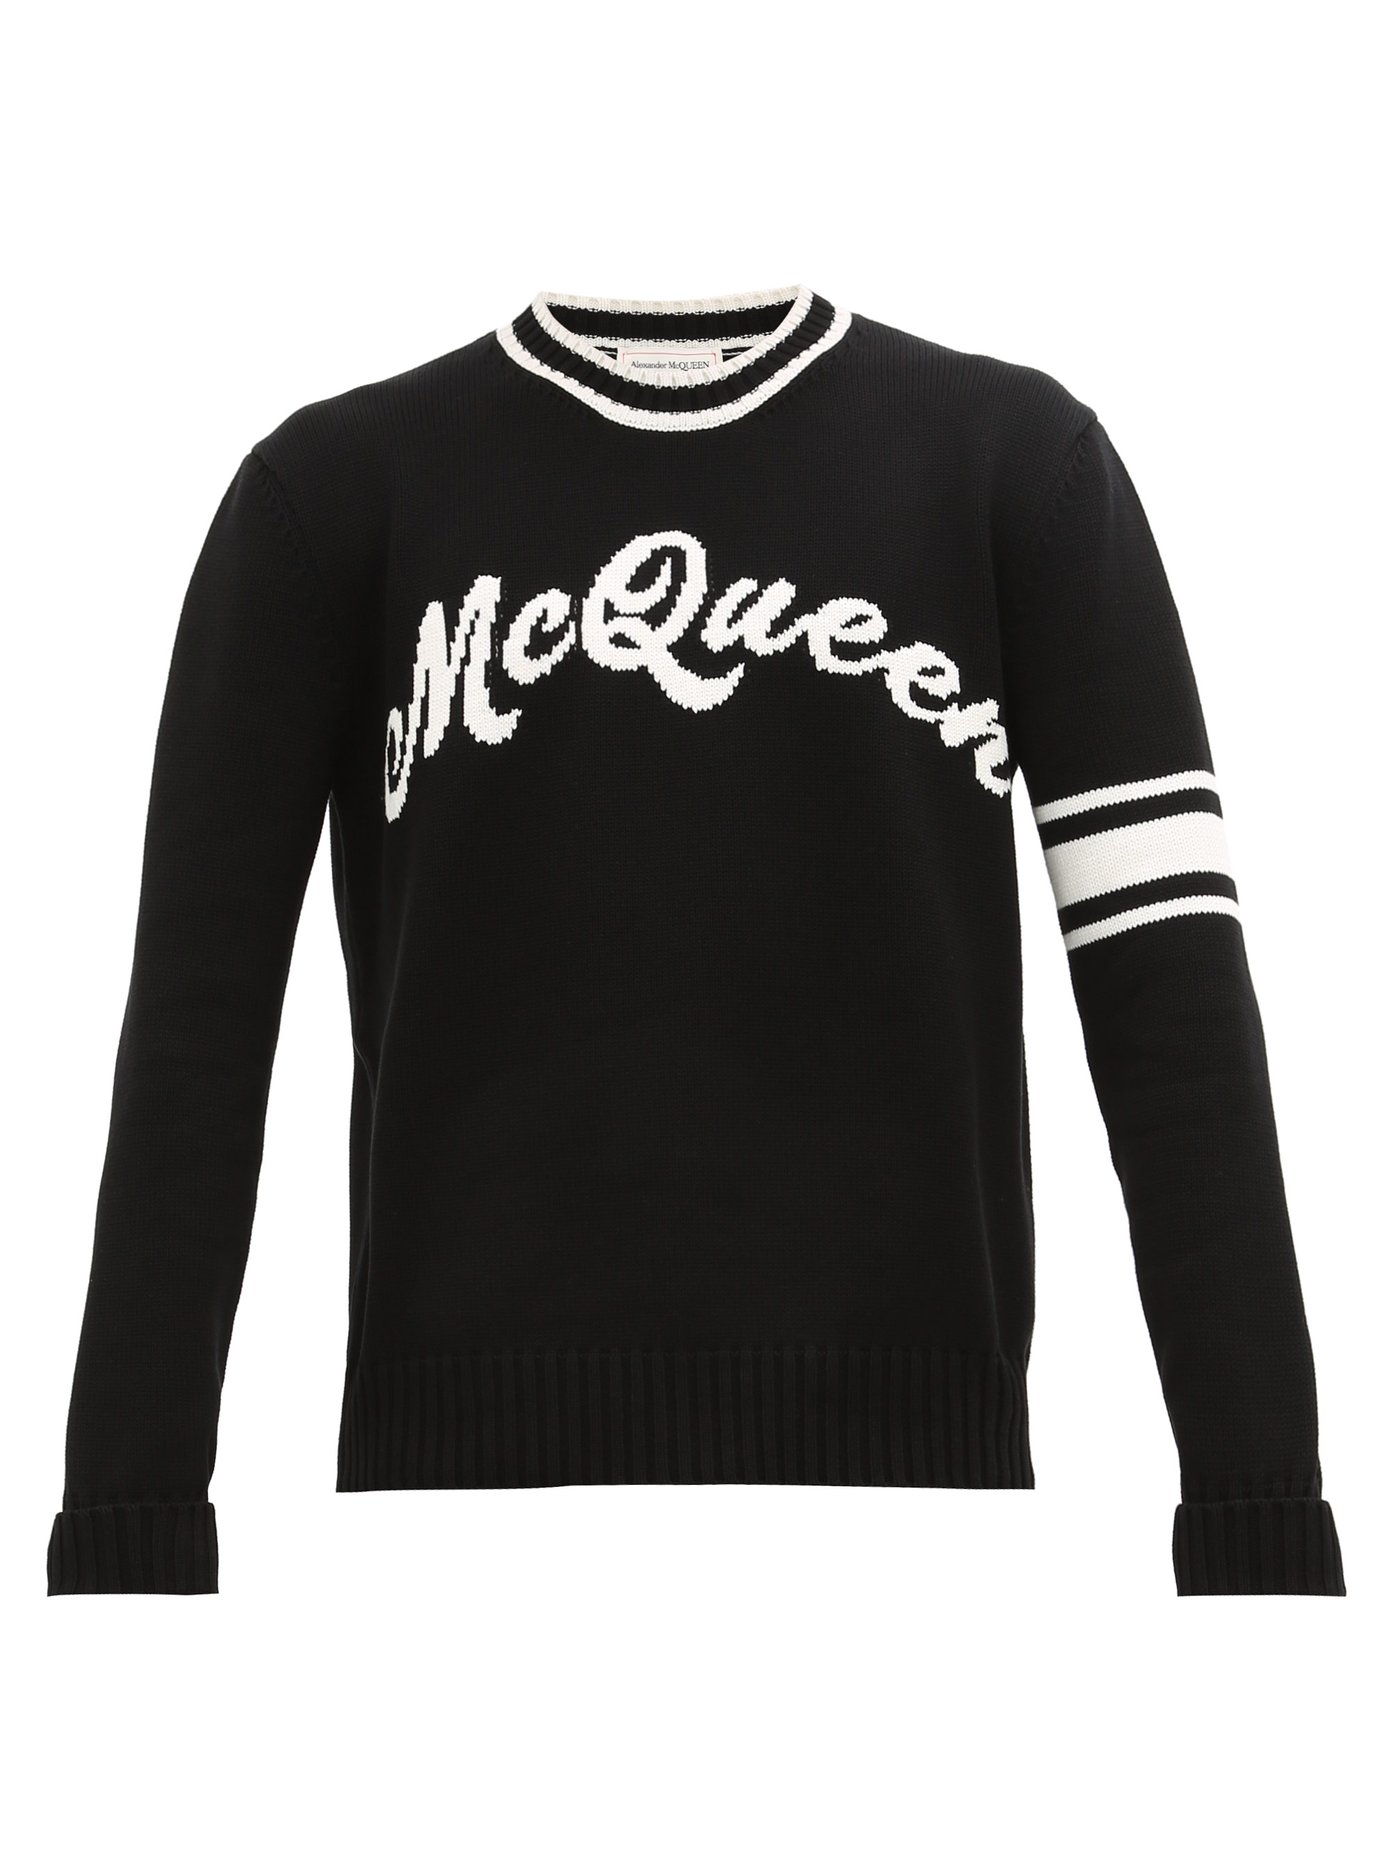 alexander mcqueen black sweater